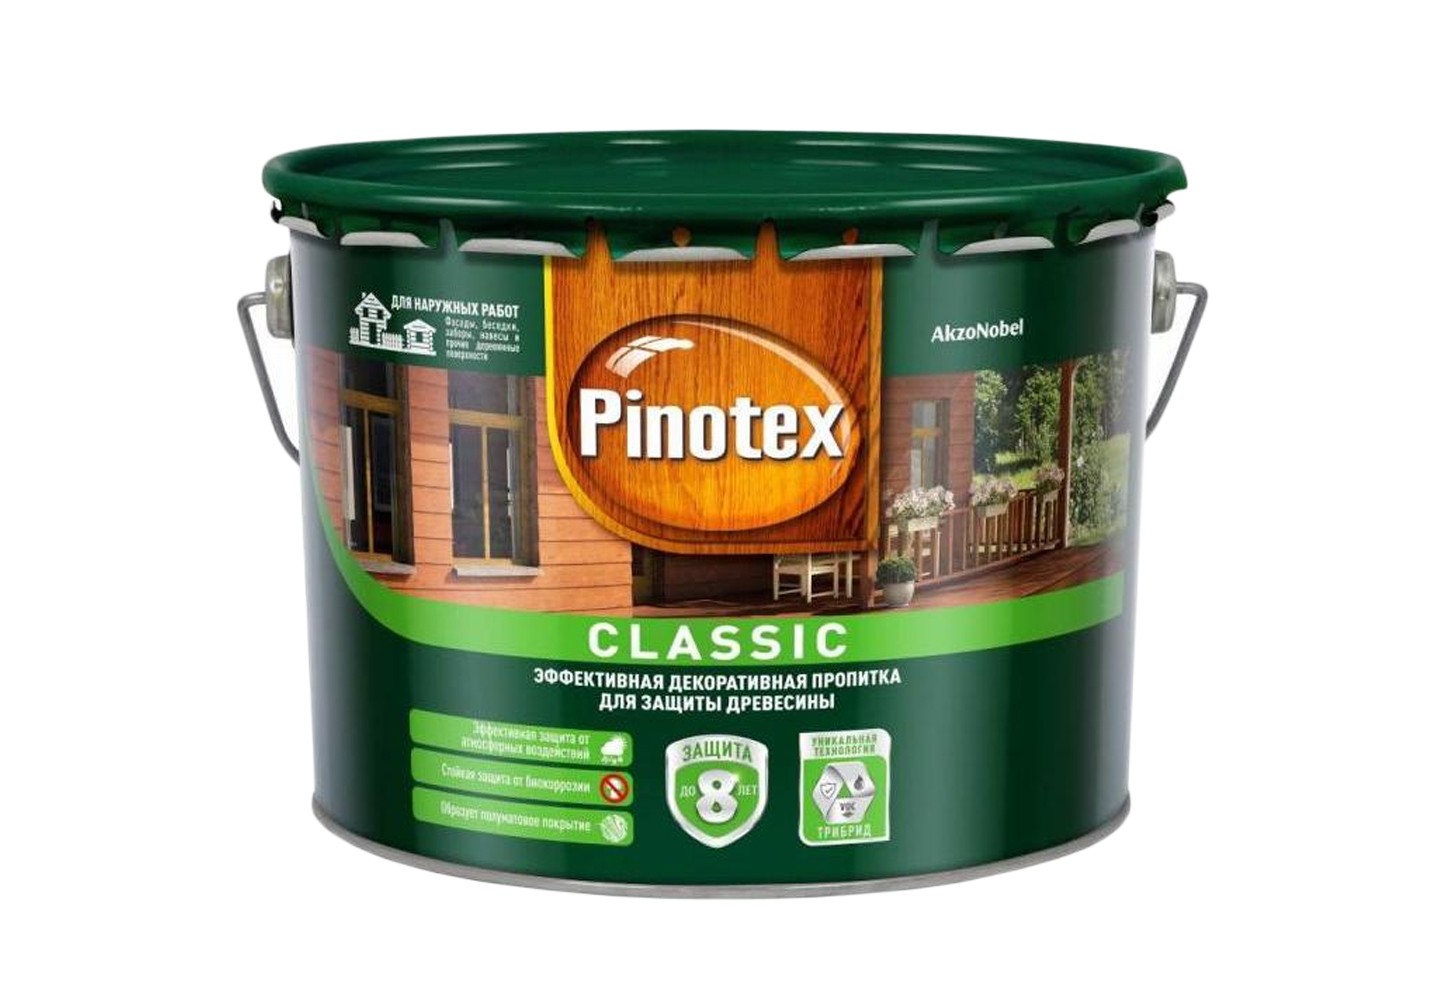 Pinotex Classic – защитная пропитка для деревянных поверхностей, которая повышает устойчивость натурального материала к влаге, плесени, грибку.